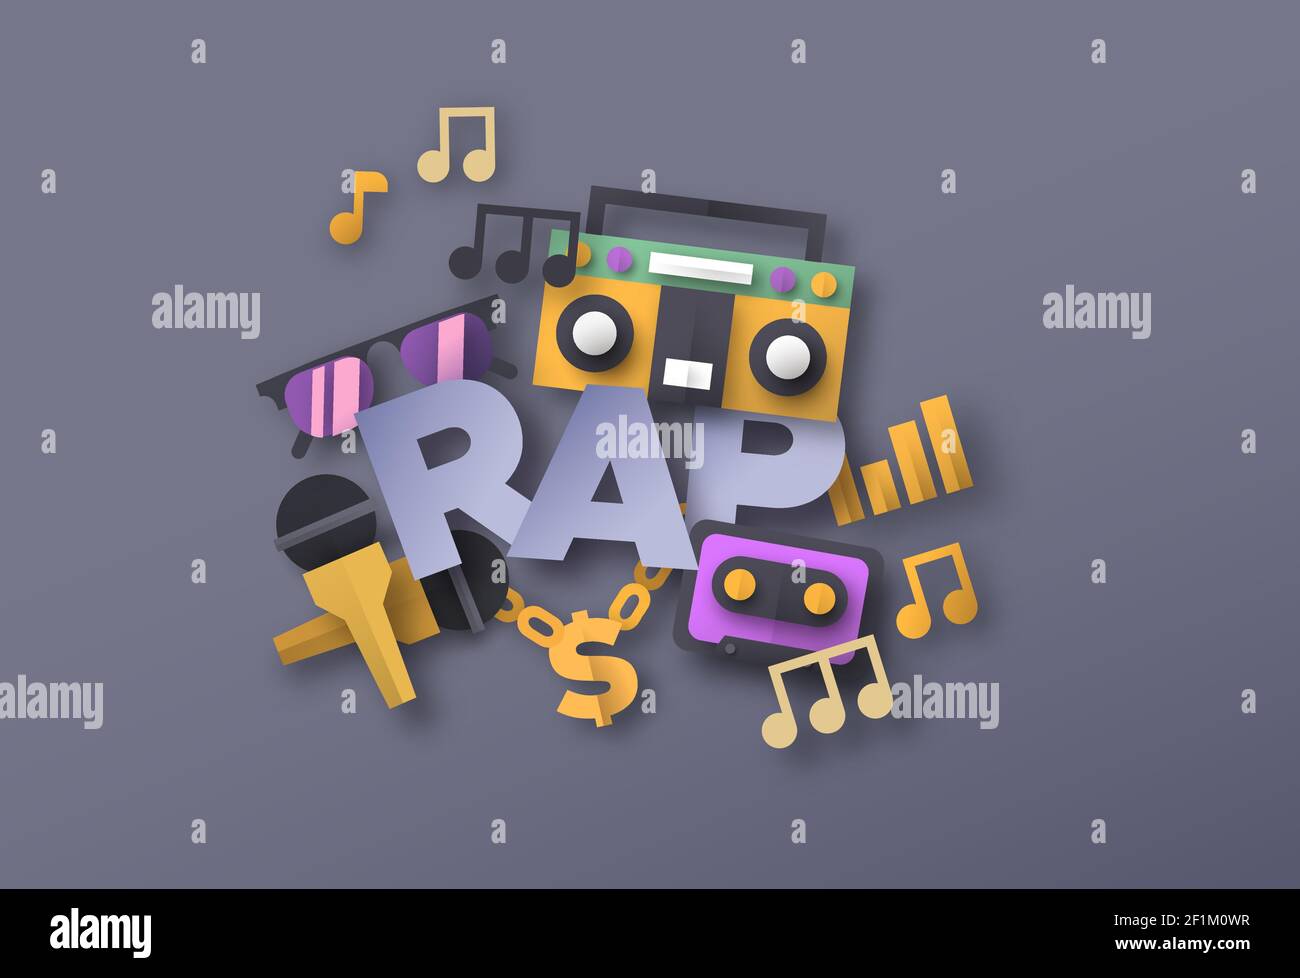 Illustrazione dello stile musicale RAP con icone di strumenti musicali con  taglio di carta 3d. Evento di battaglia di rapper urbano o concetto di  suono di strada. Include microfono, oro c Immagine